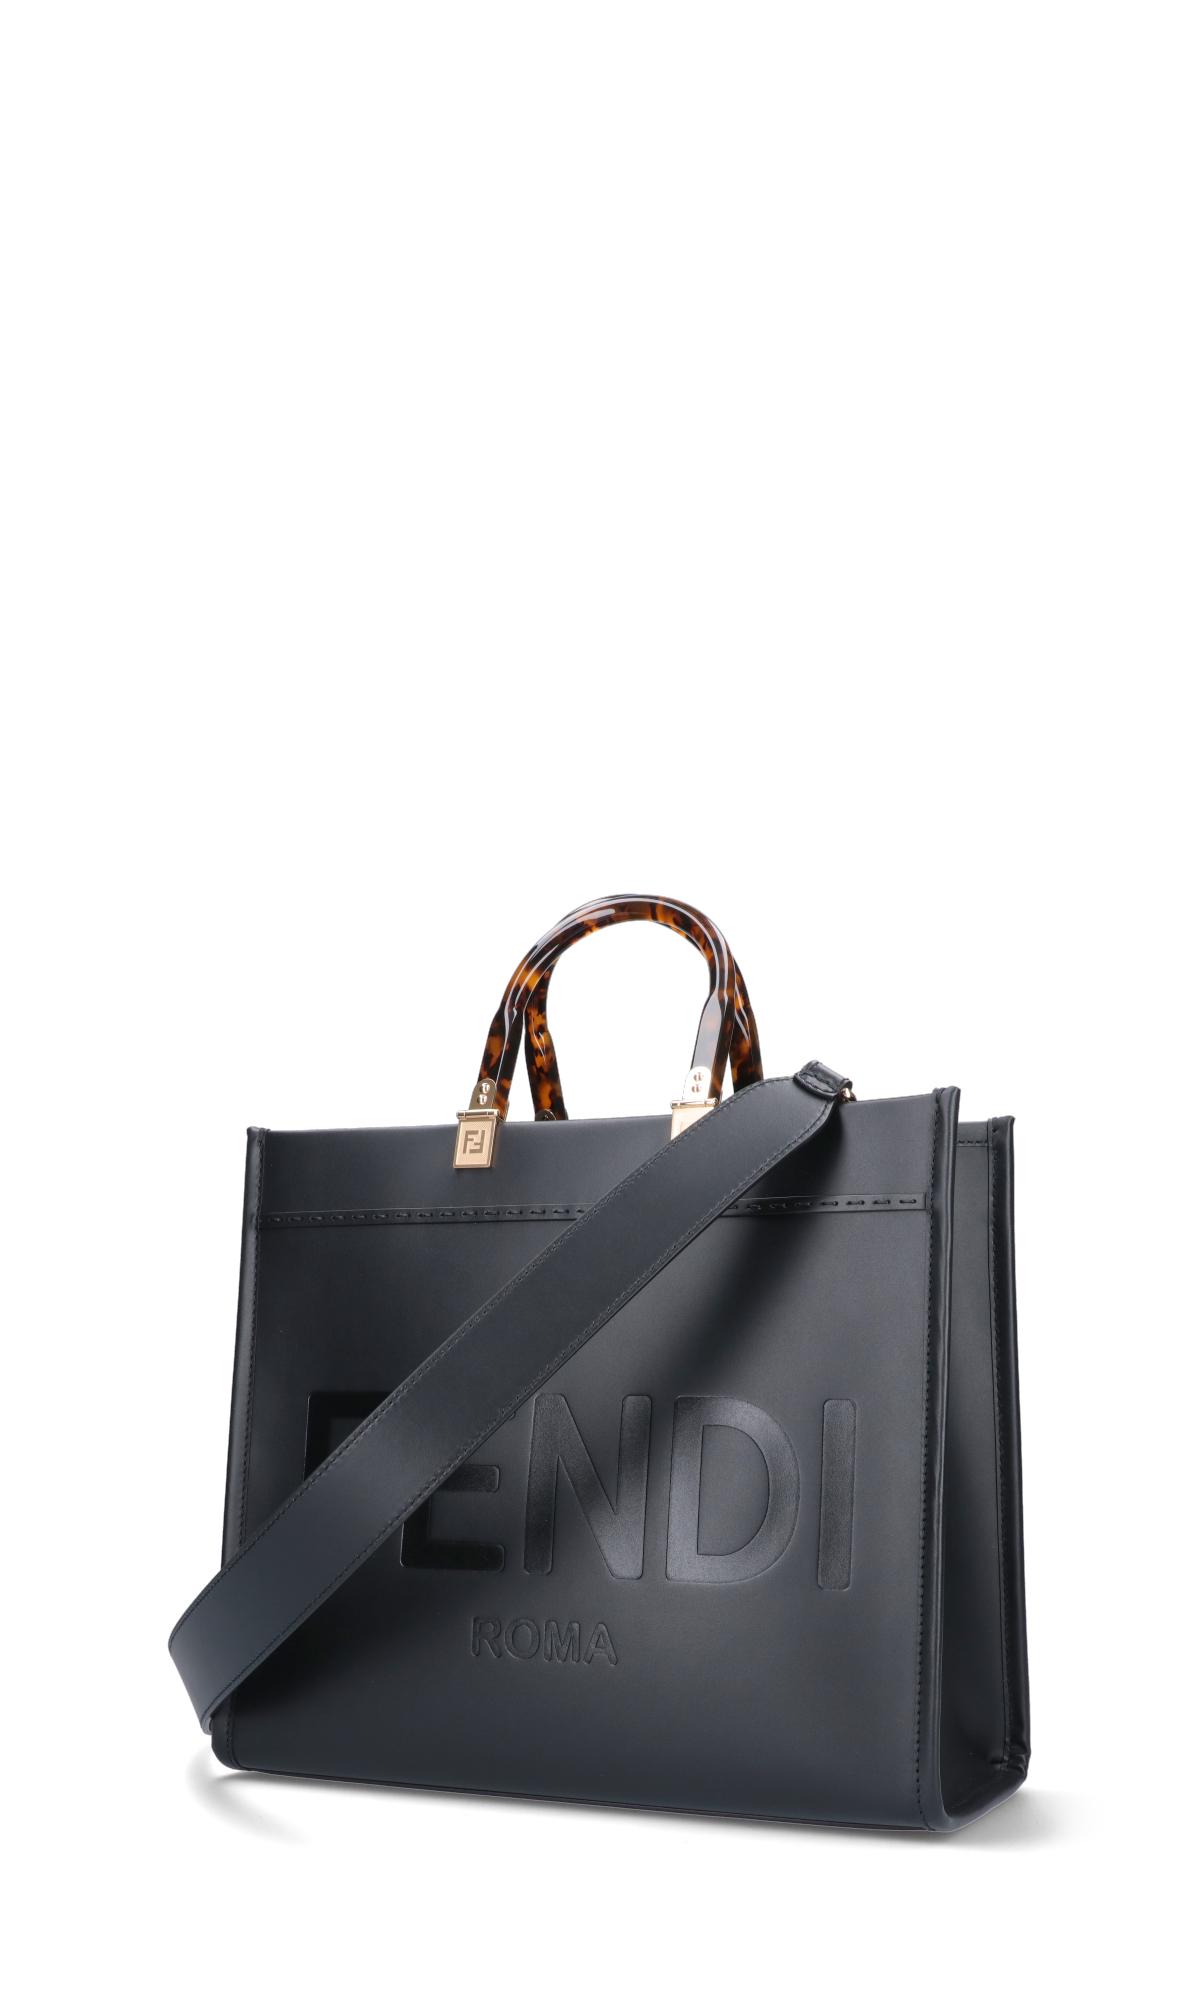 Fendi 'sunshine' Medium Tote Bag in Black